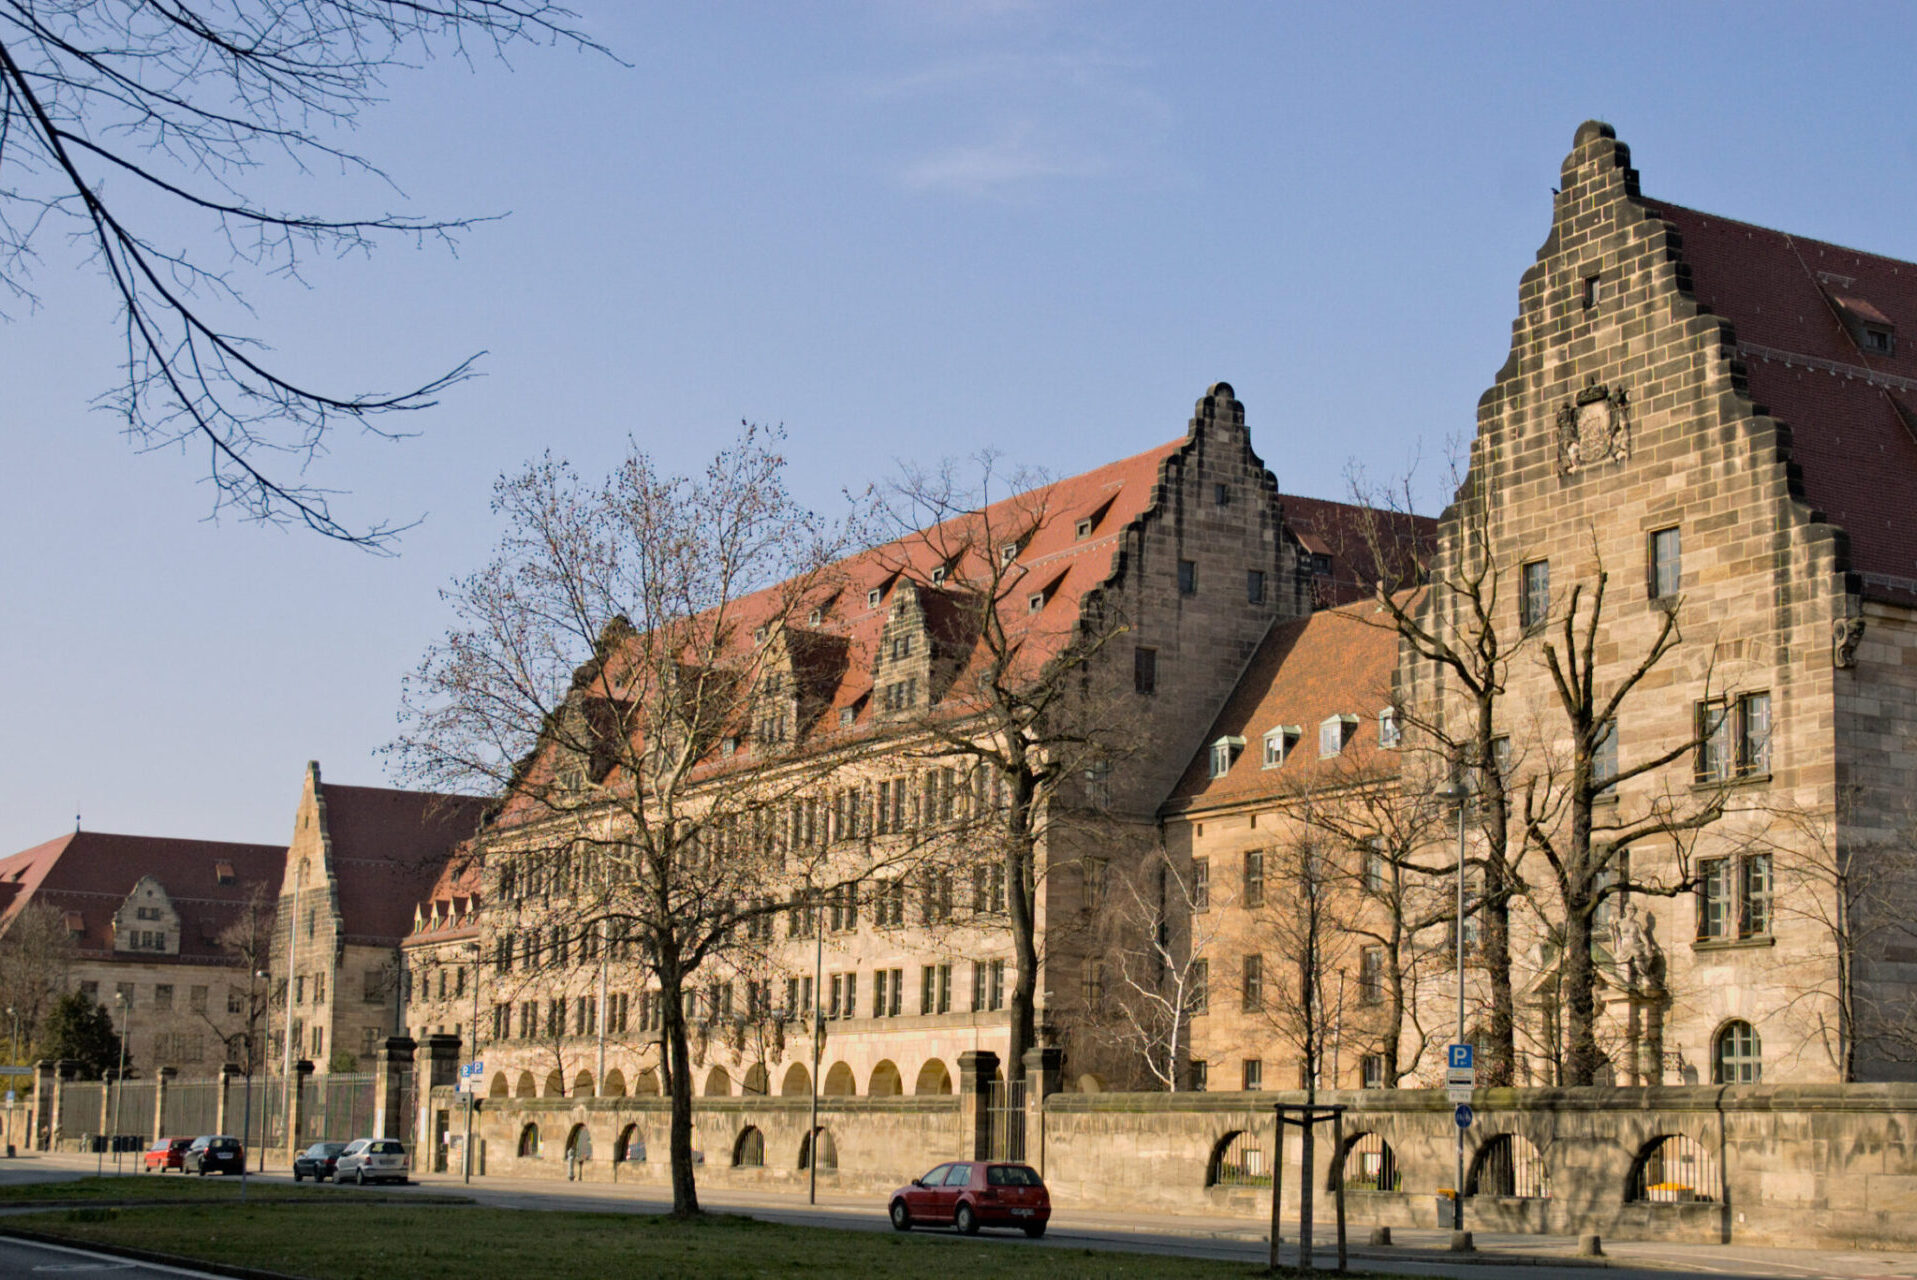 Entstehung des Simultandolmetschens in Nürnberg nach dem 2. Weltkrieg